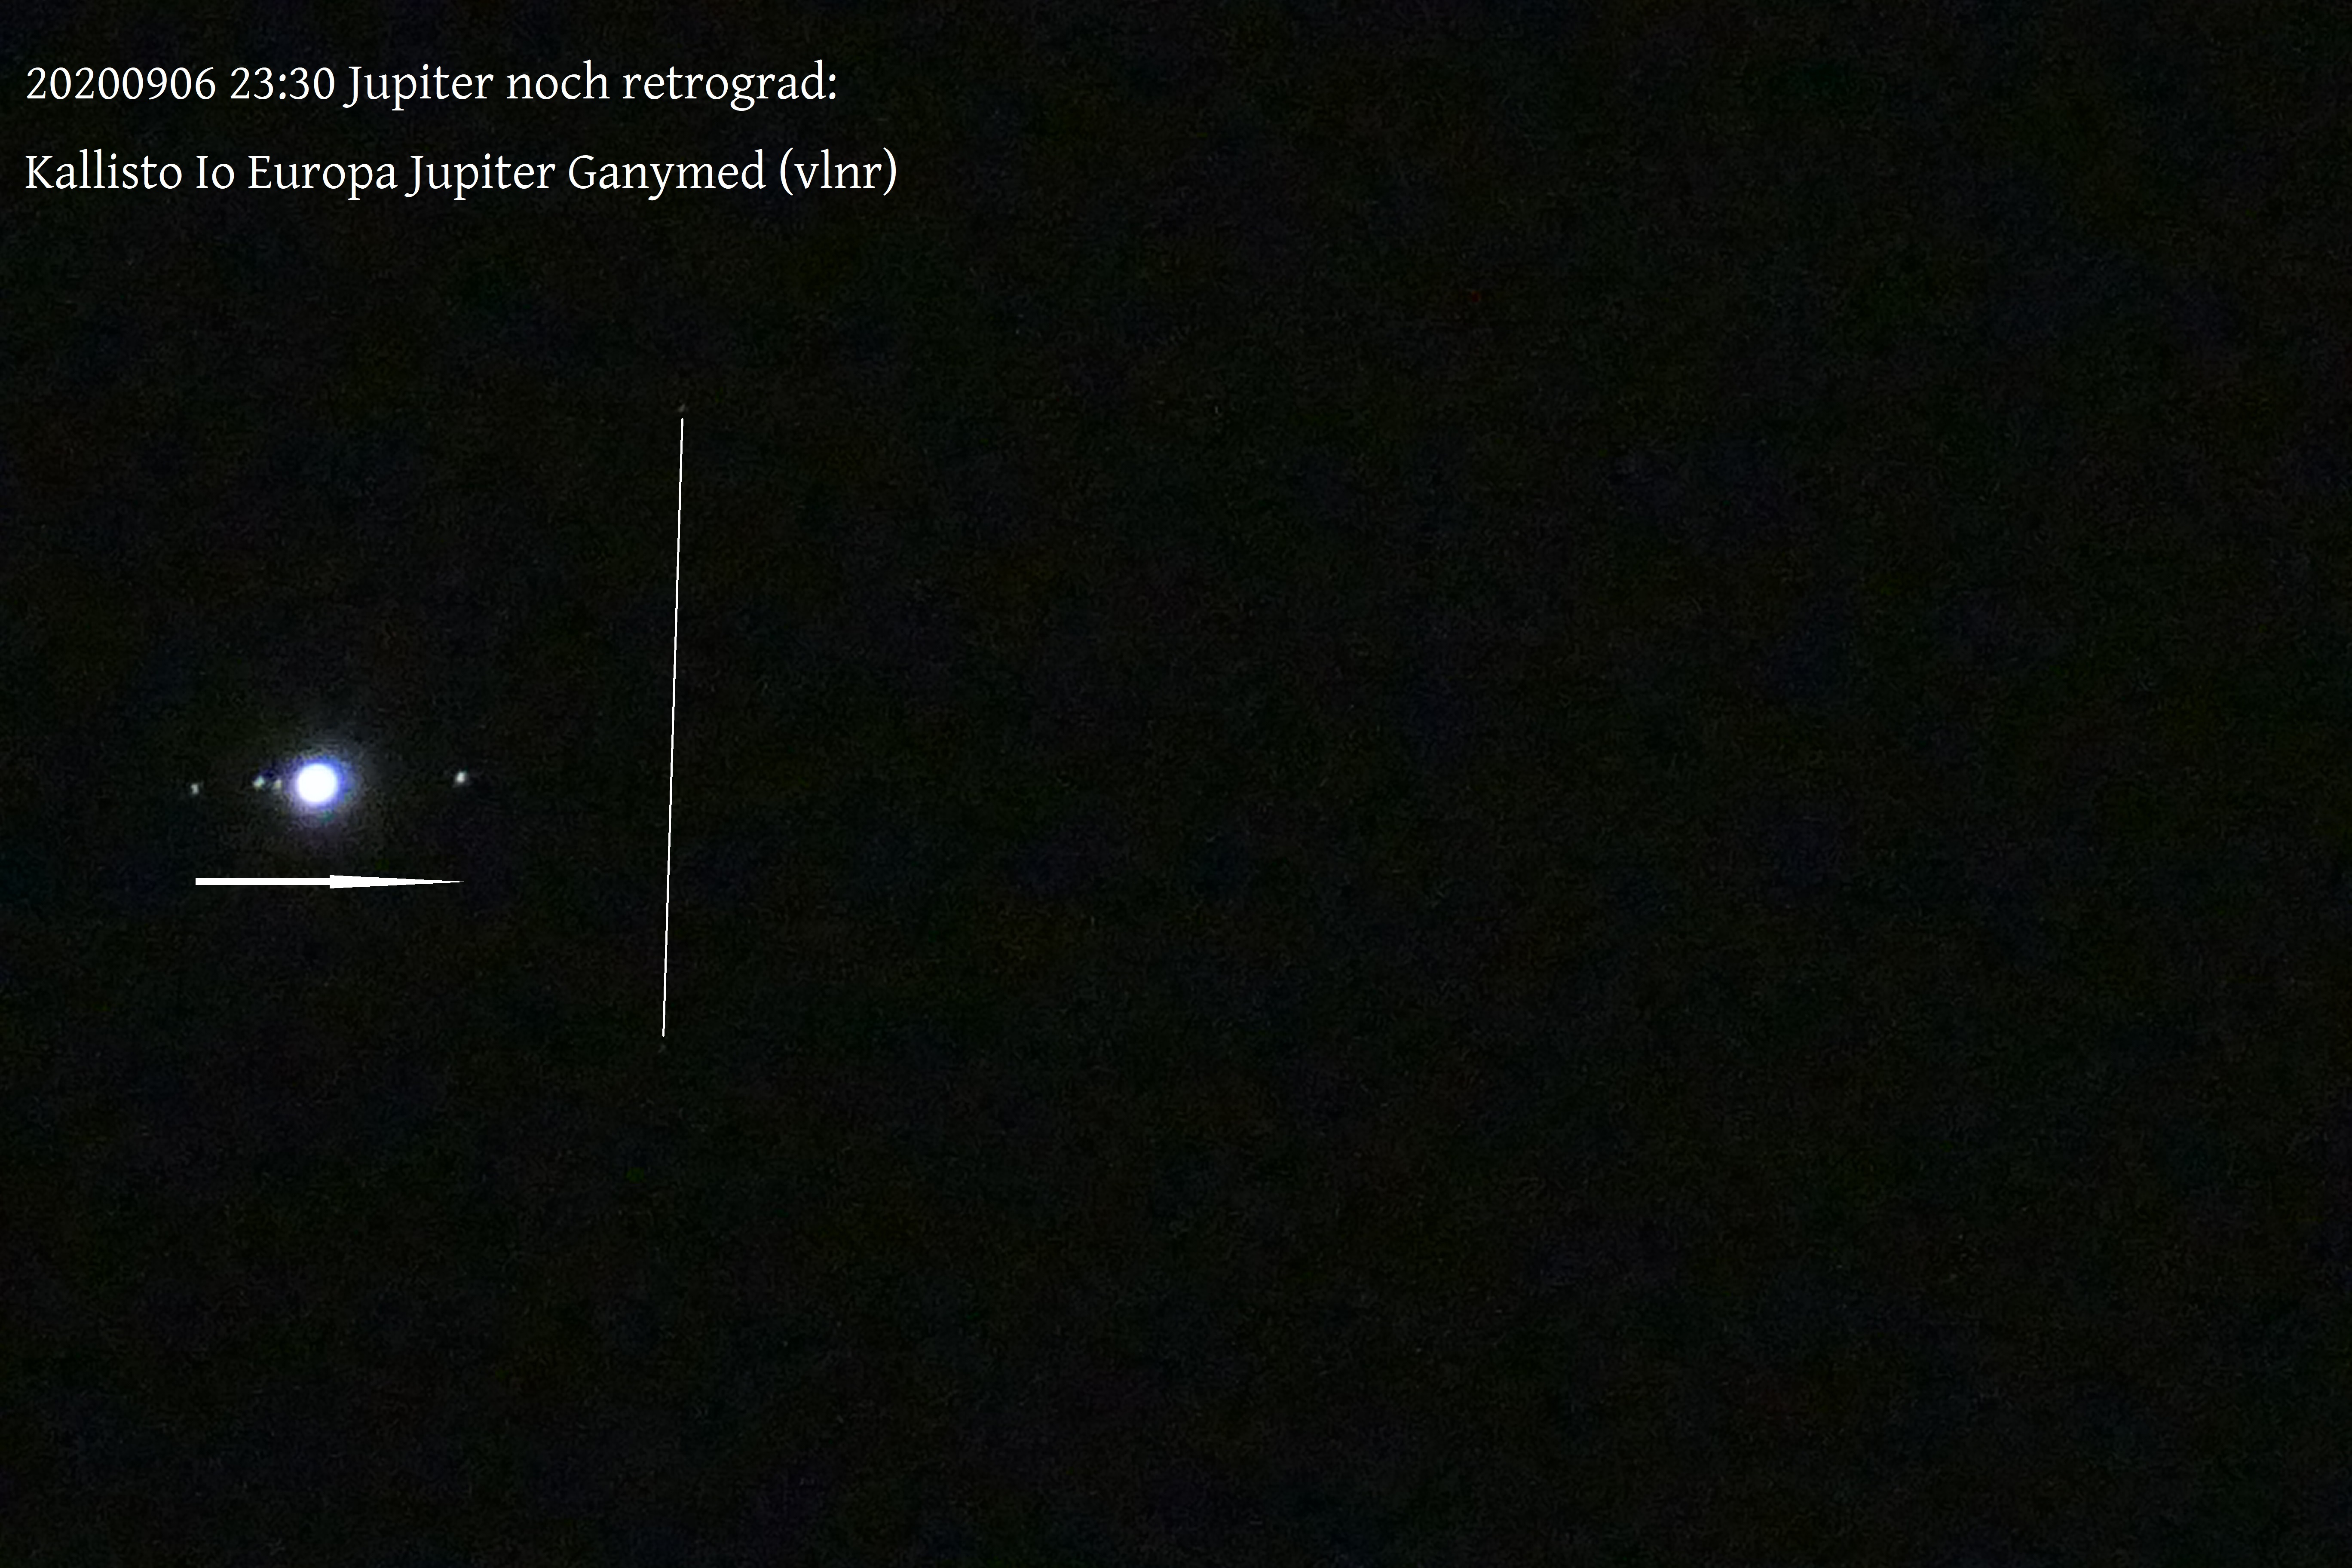 Abb. 1: Am 6.9. lief Jupiter mitsamt seinen Galileischen Monden I-IV (Io, Europa, Ganymed und Kallisto) vor dem Sternenhintergrund noch retrograd (rückläufig) nach rechts; vgl. Text.